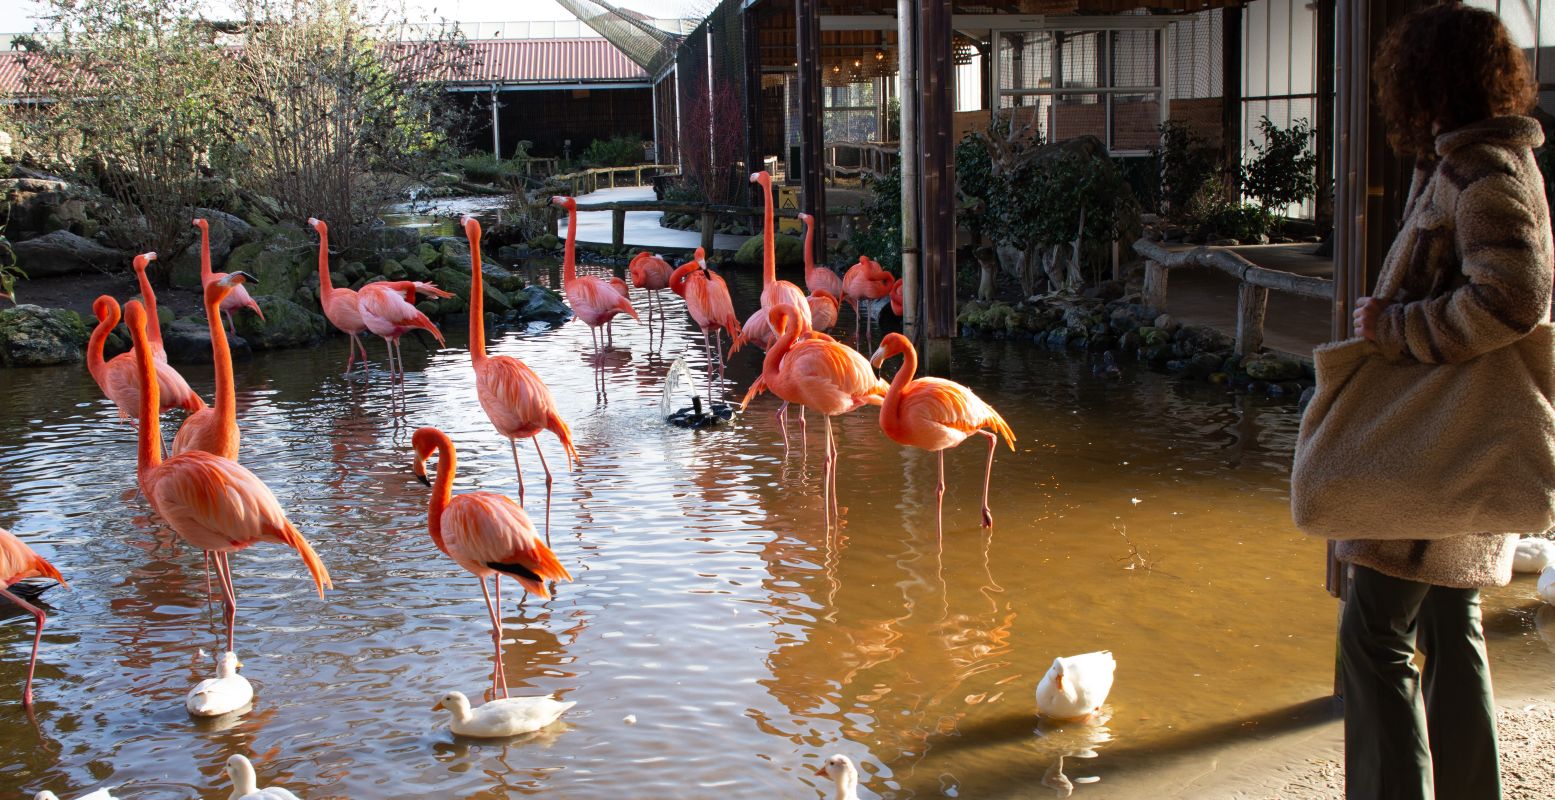 De flamingo's vallen meteen op met hun felroze veren. Je kunt ze van heel dichtbij bewonderen! Foto: DagjeWeg.NL